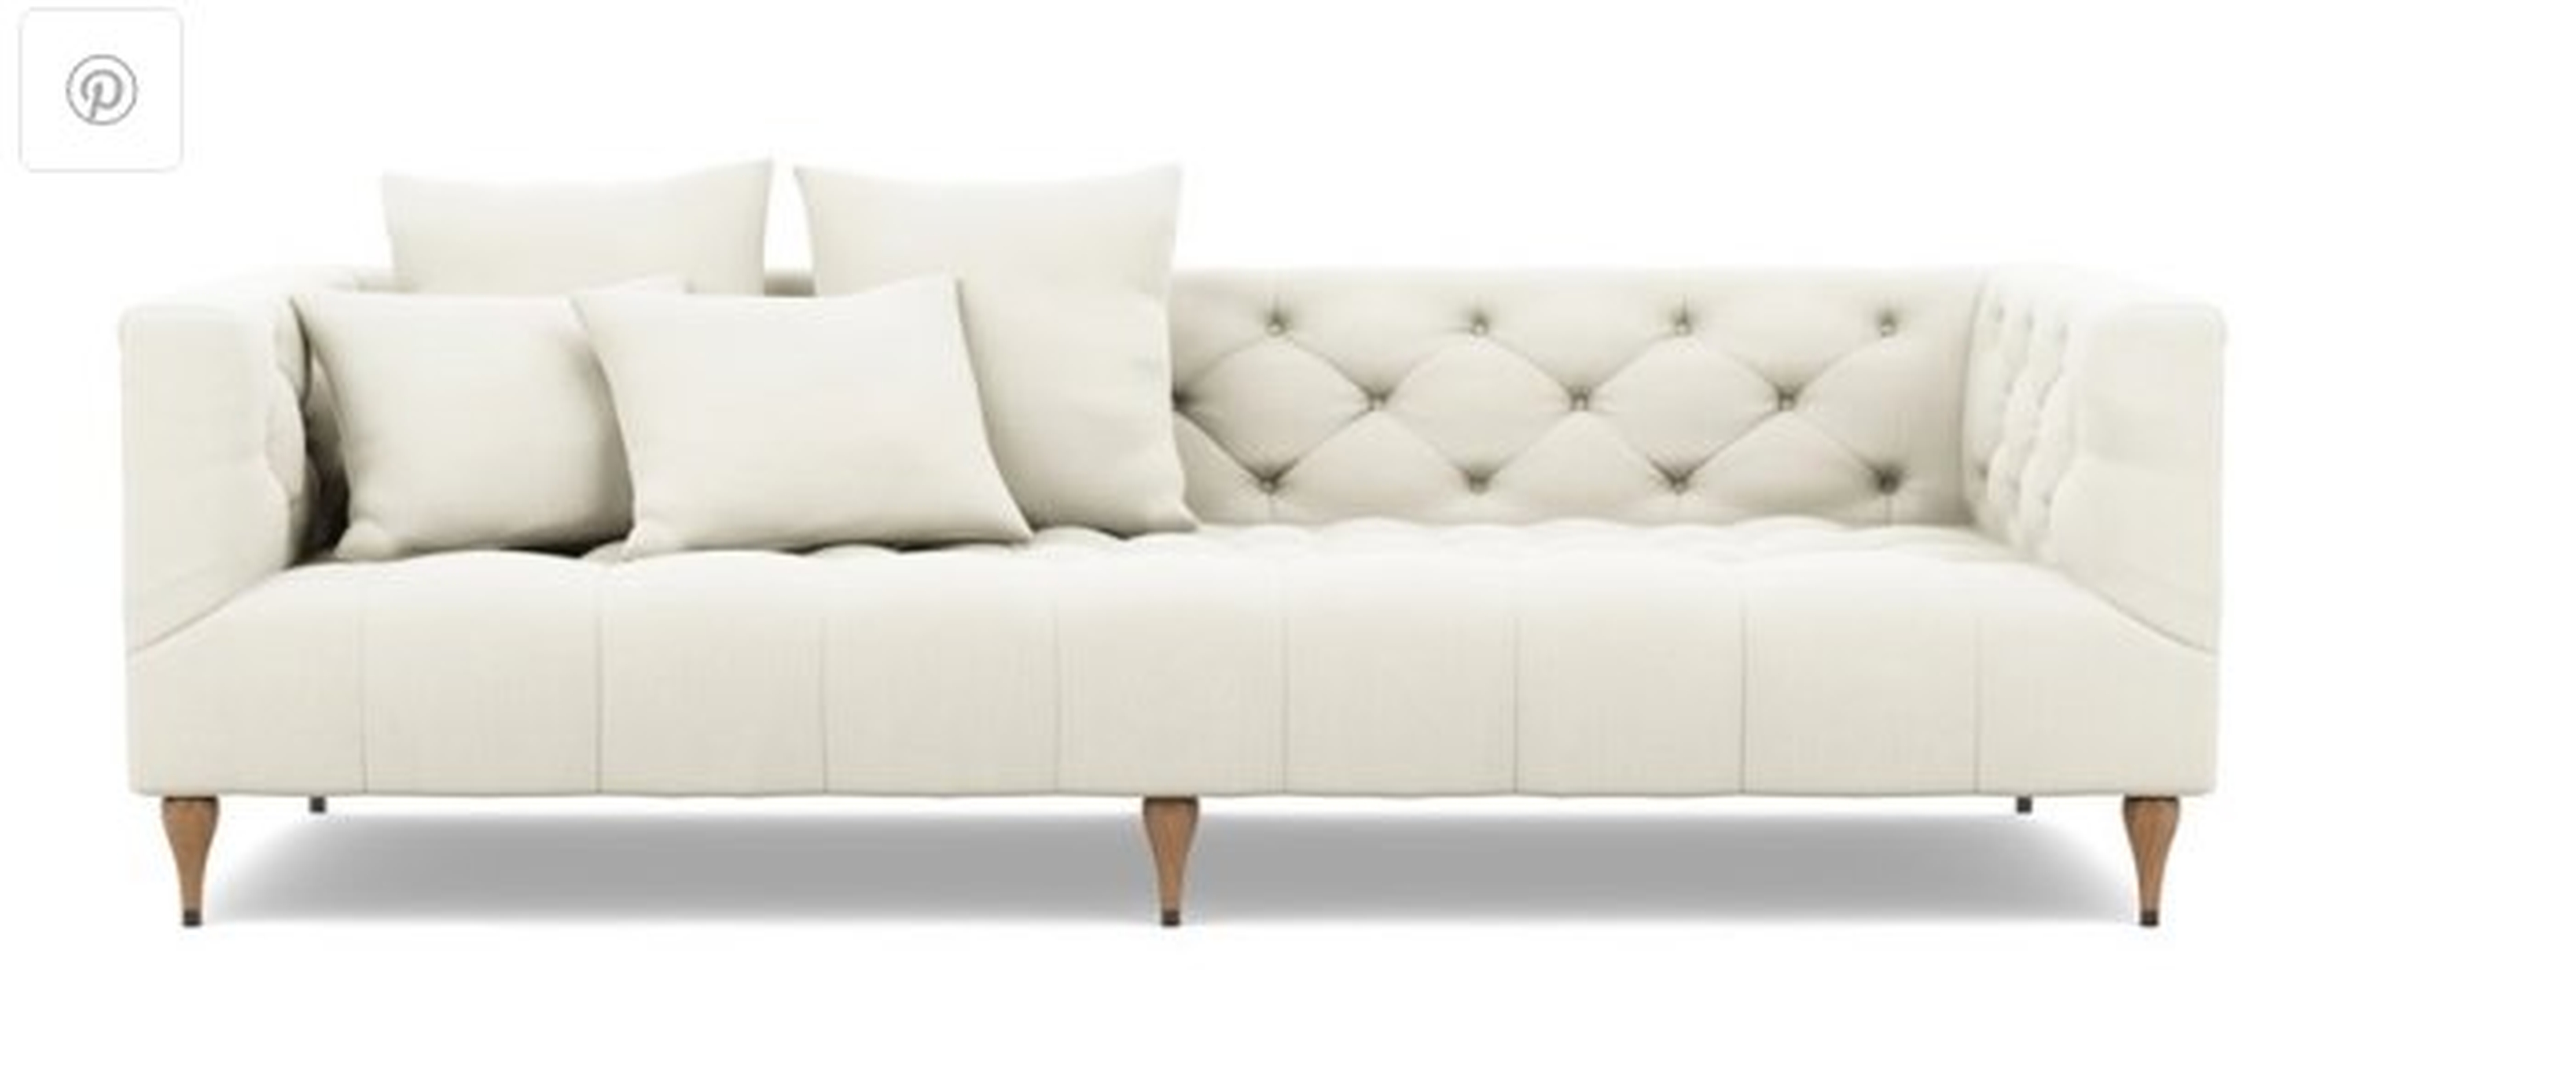 MS. CHESTERFIELD Fabric Sofa - Interior Define